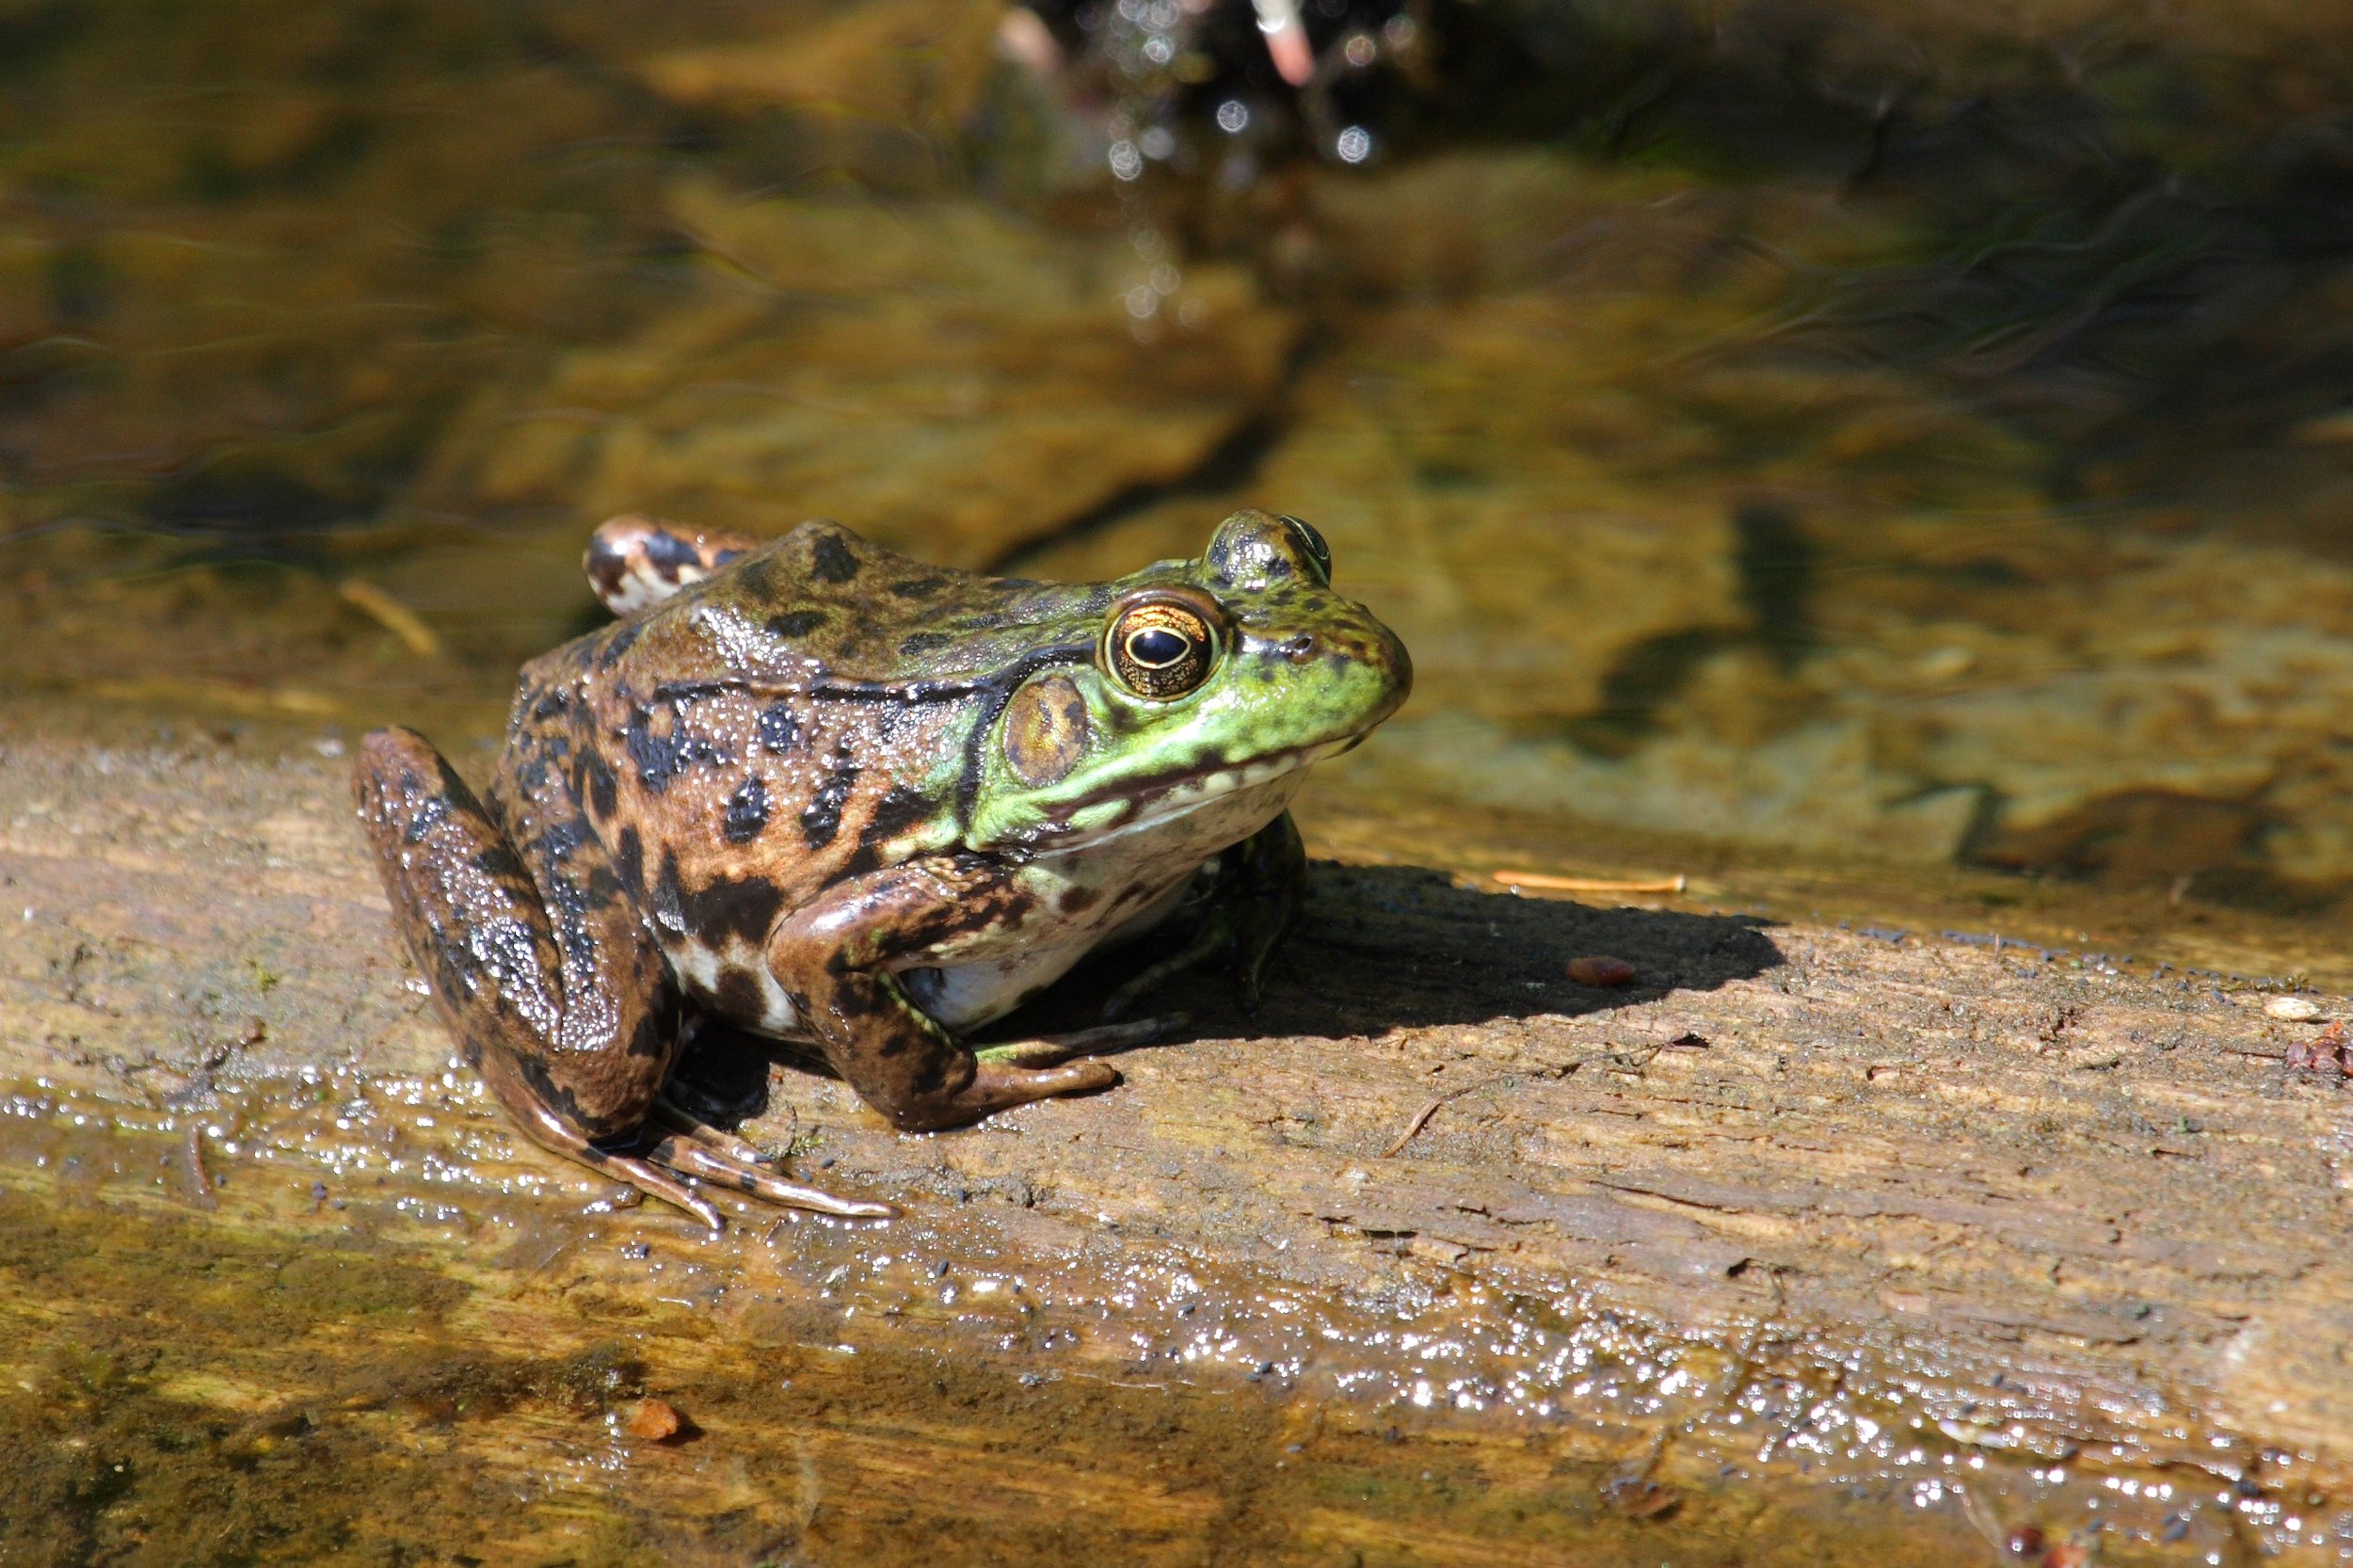 图4。青蛙显示中间外观。突出的背外侧褶皱和尖鼻指向绿色蛙，后腿图案最类似于水貂蛙。照片由西蒙·皮埃尔·巴雷特提供，维基共享媒体。